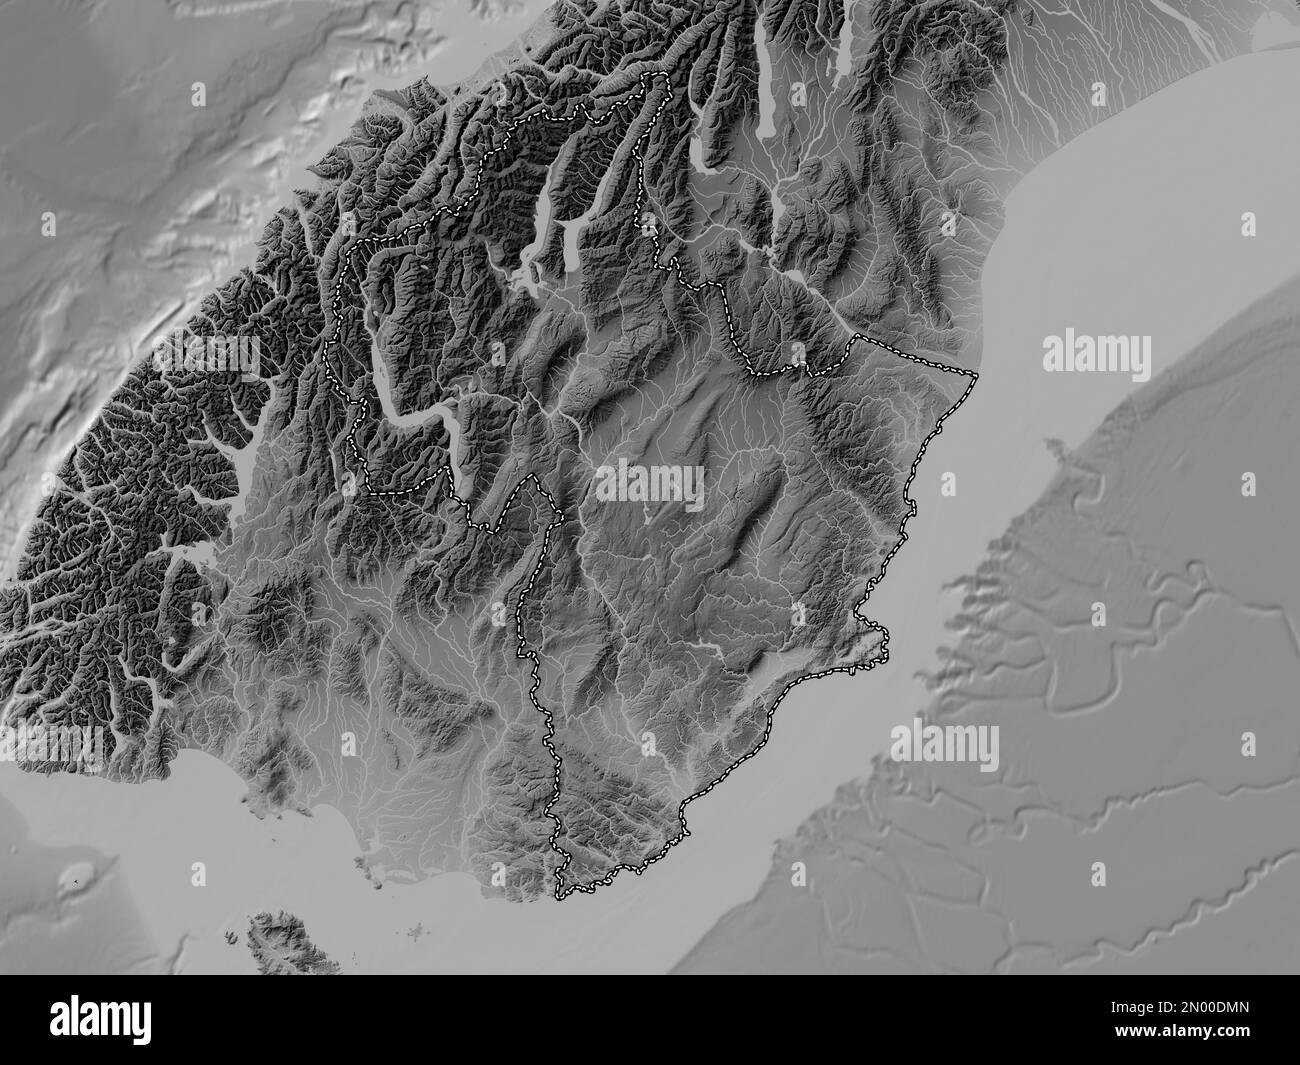 Otago, conseil régional de Nouvelle-Zélande. Carte d'altitude en niveaux de gris avec lacs et rivières Banque D'Images